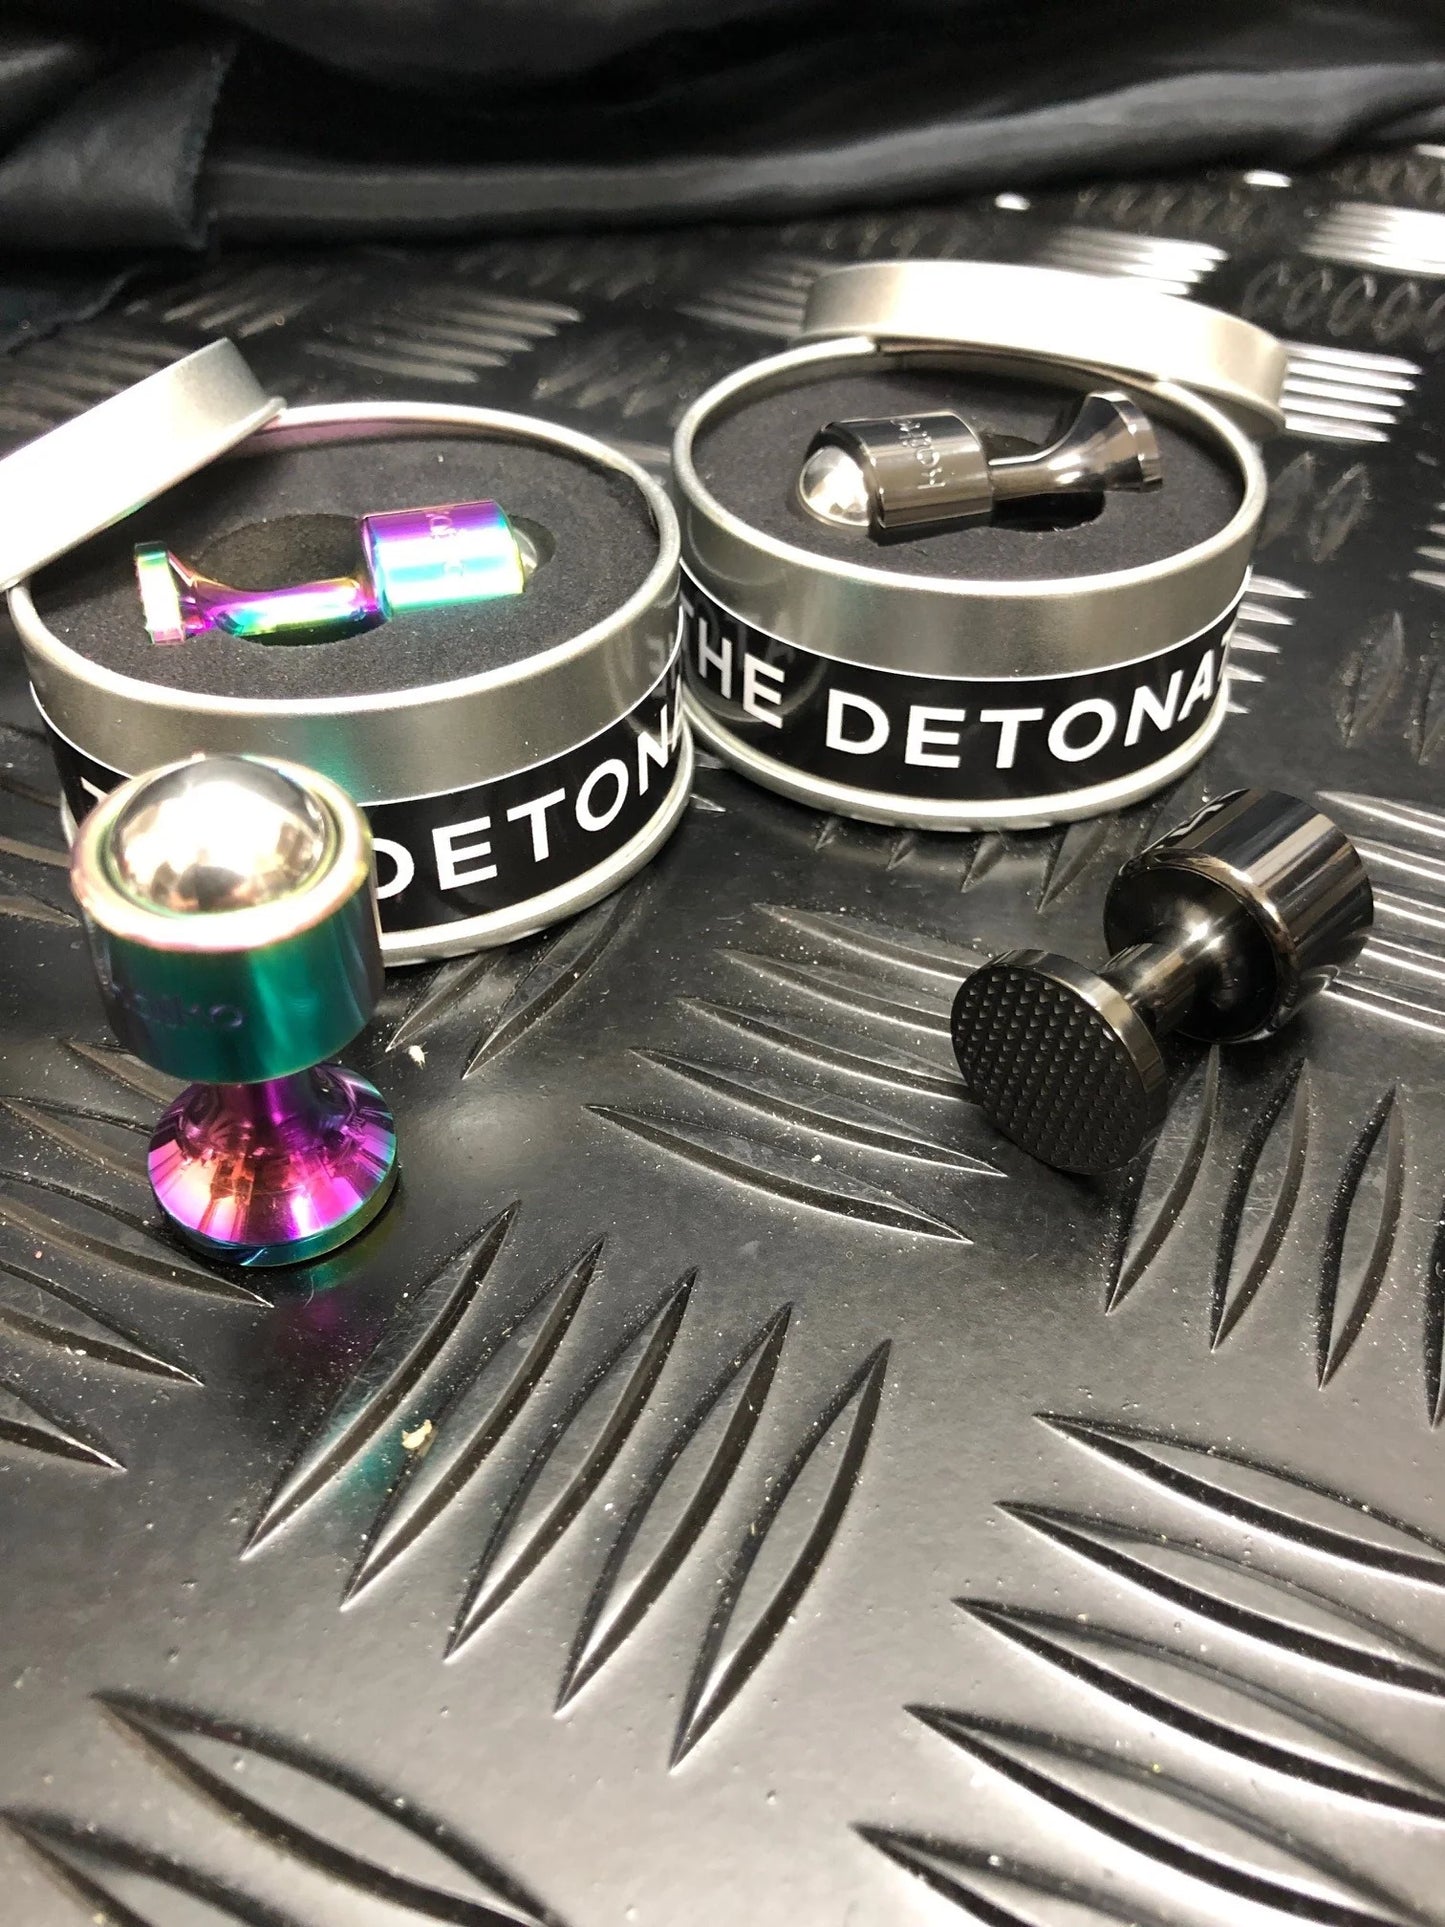 The Detonator - roll, press & twist